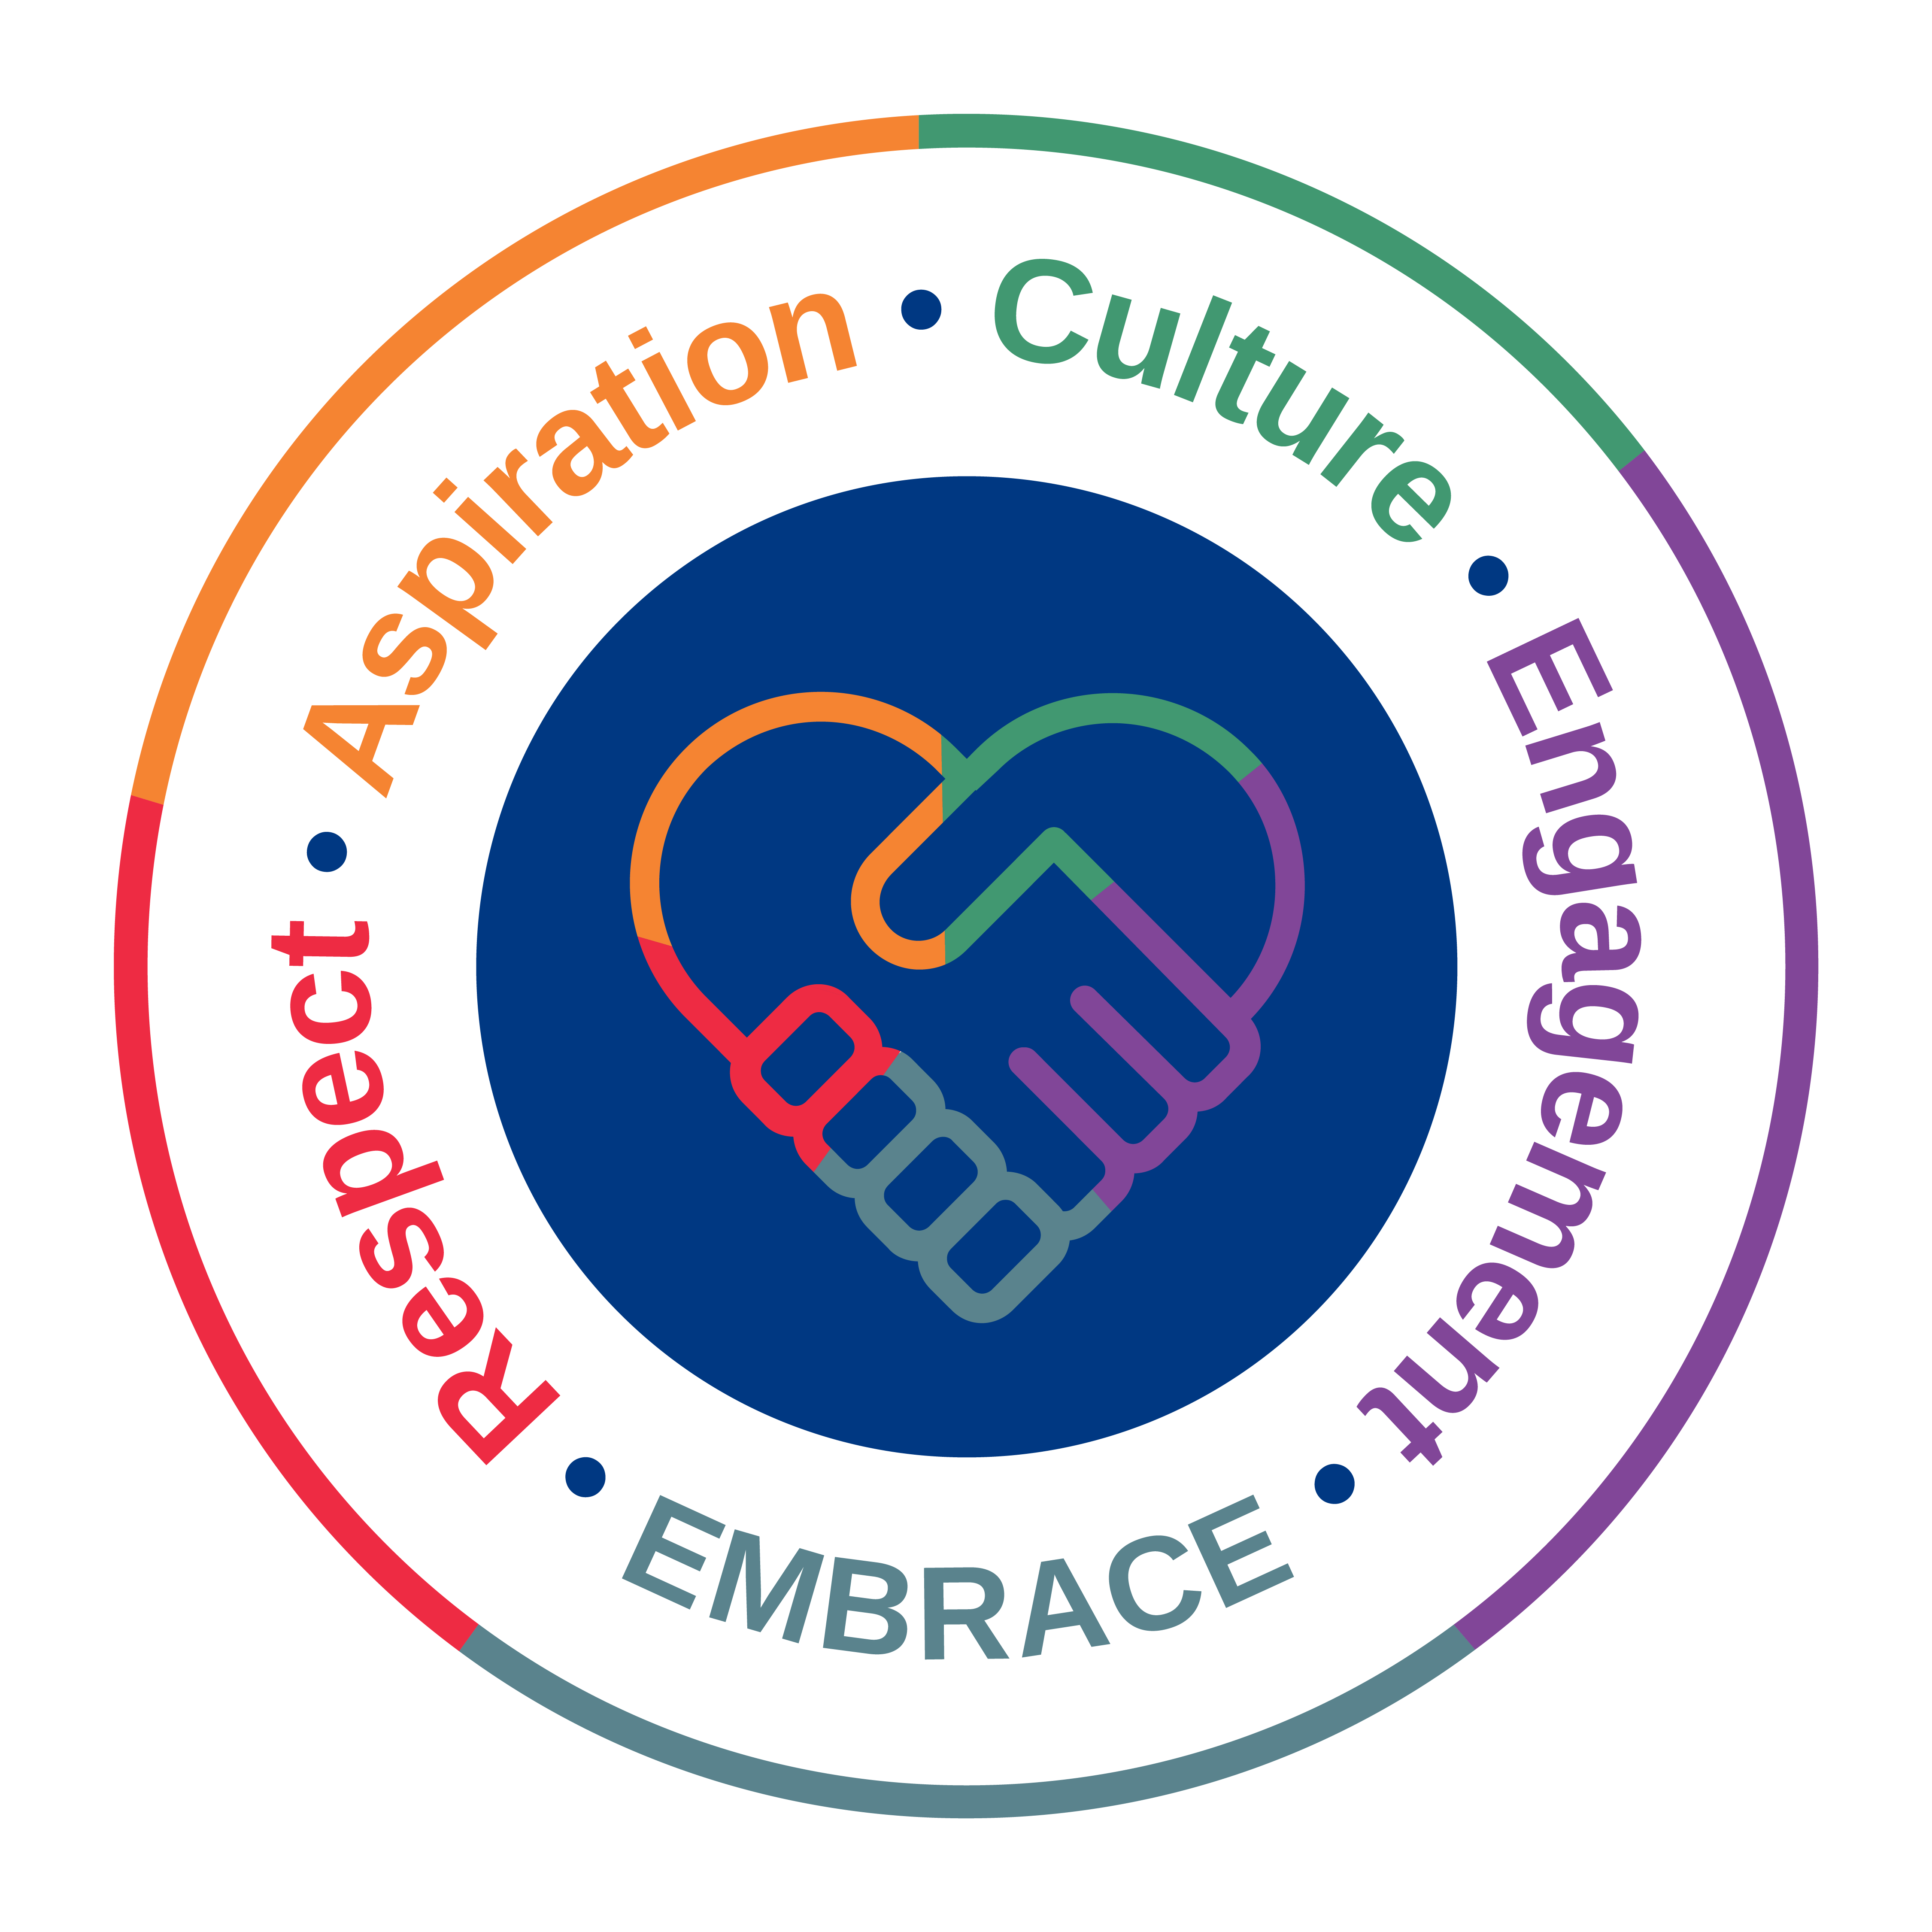 EMBRACE logo - Respect Aspiration Culture Engagement